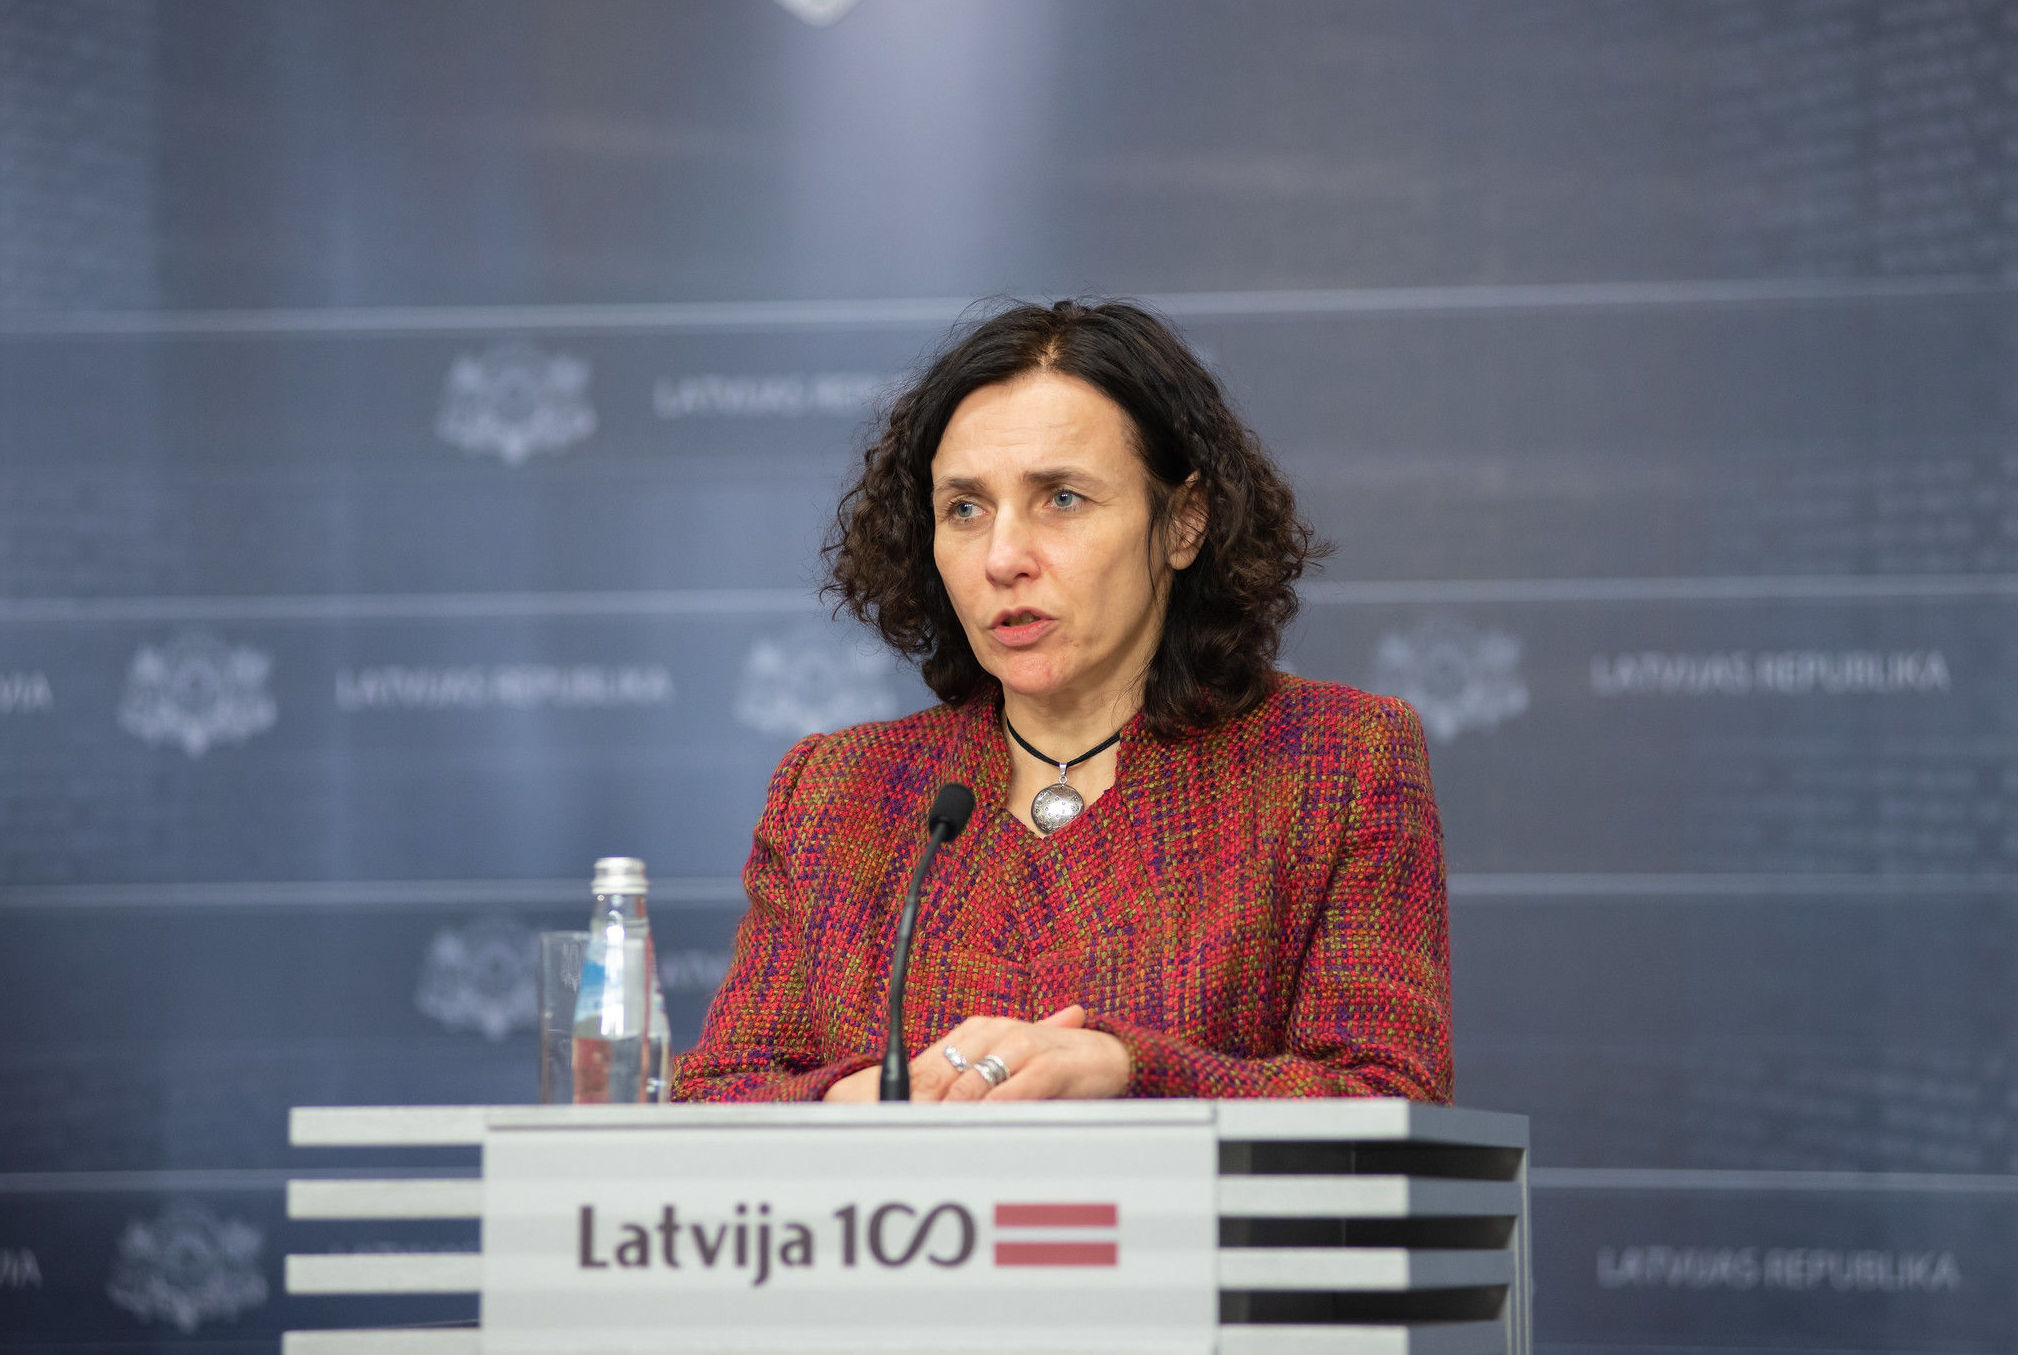 Министр образования и науки Латвии Илга Шуплинска